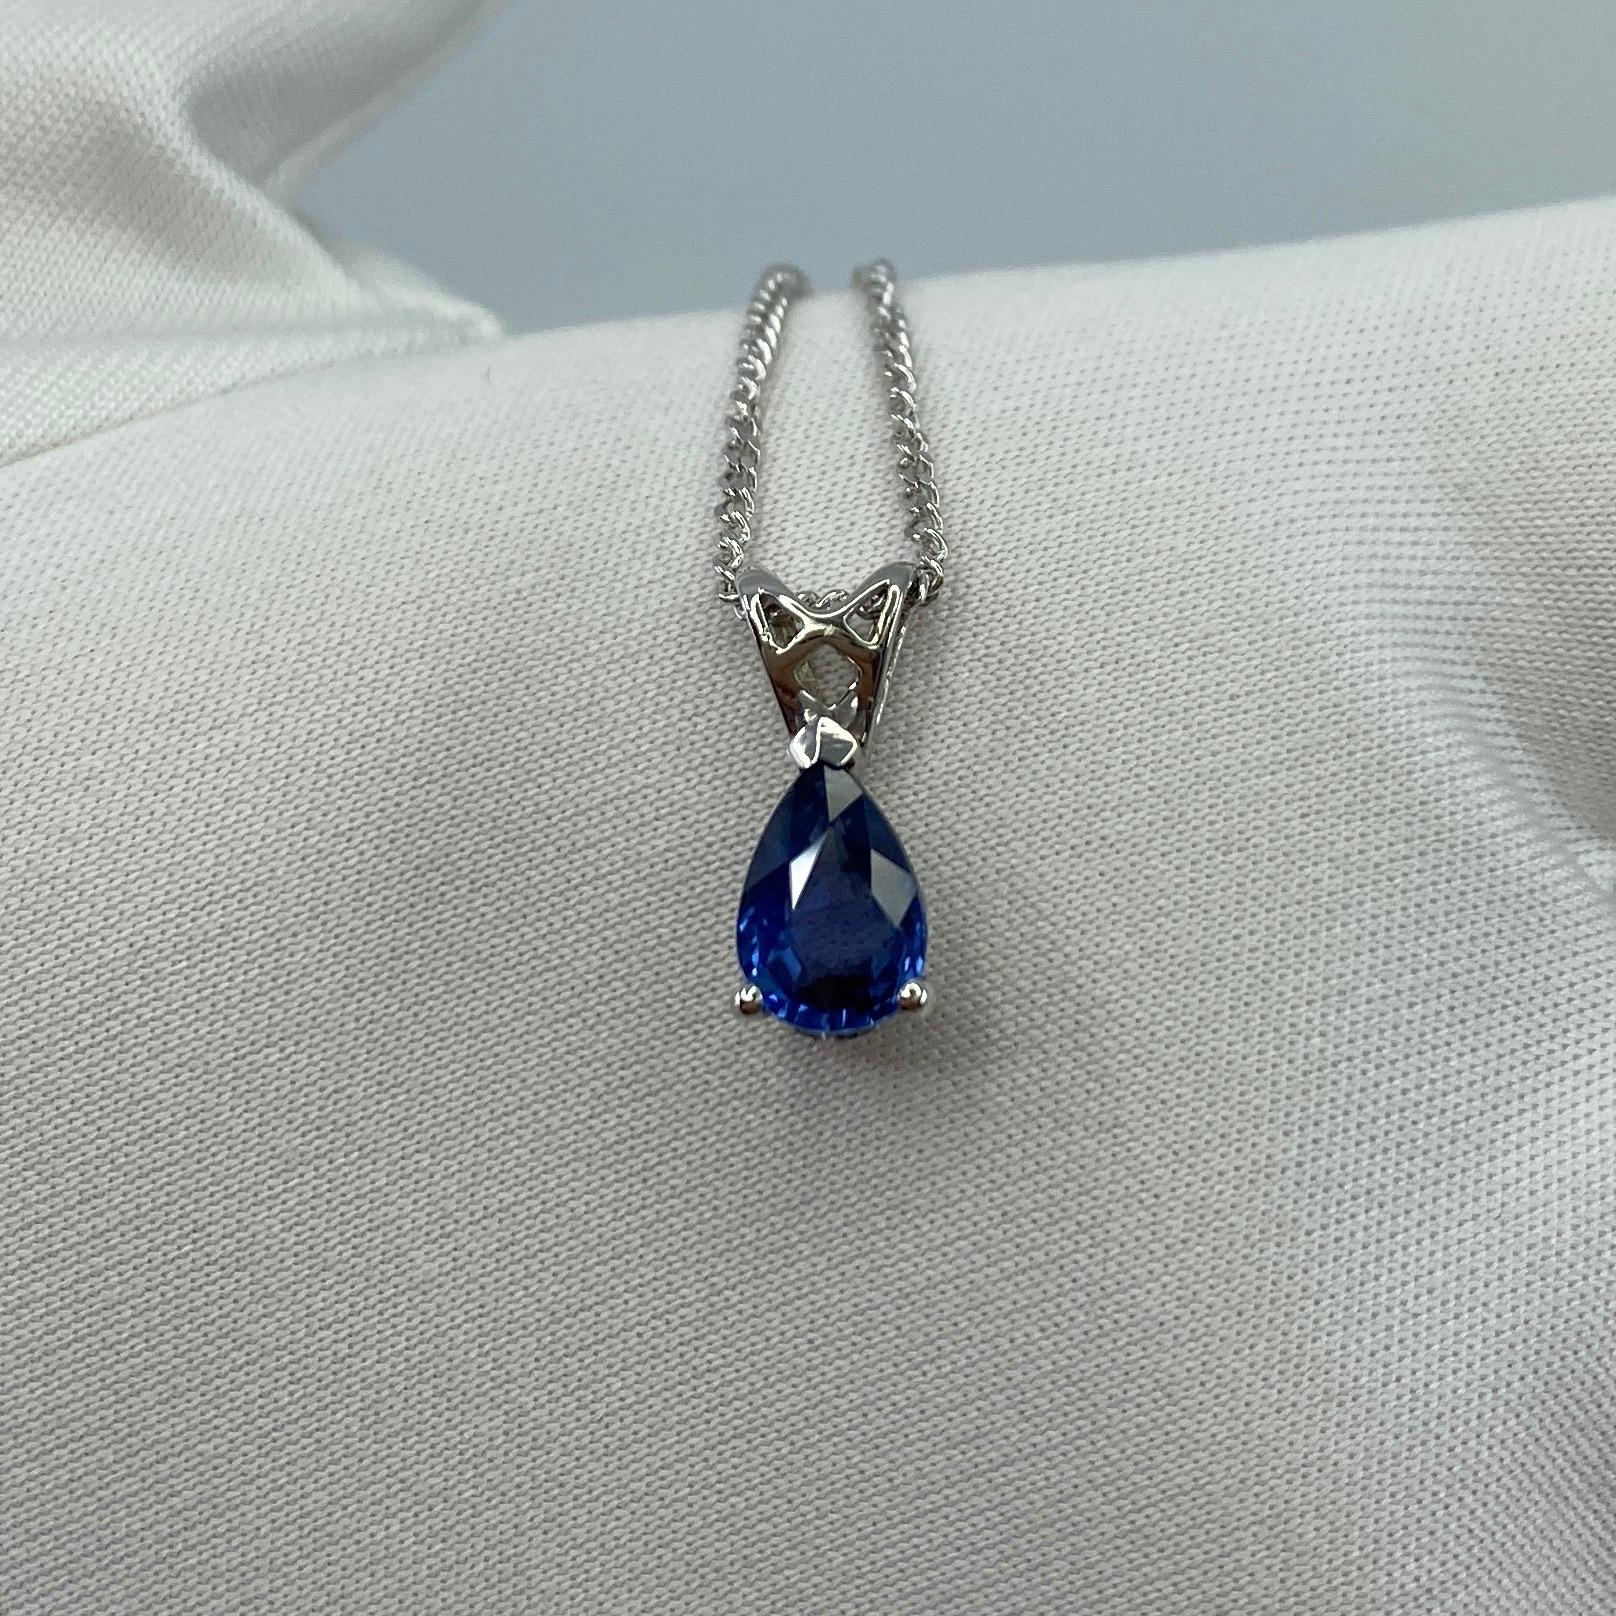 1.03ct Vivid Blue Ceylon Sapphire 18k White Gold Pear Cut Heart Pendant Necklace 4